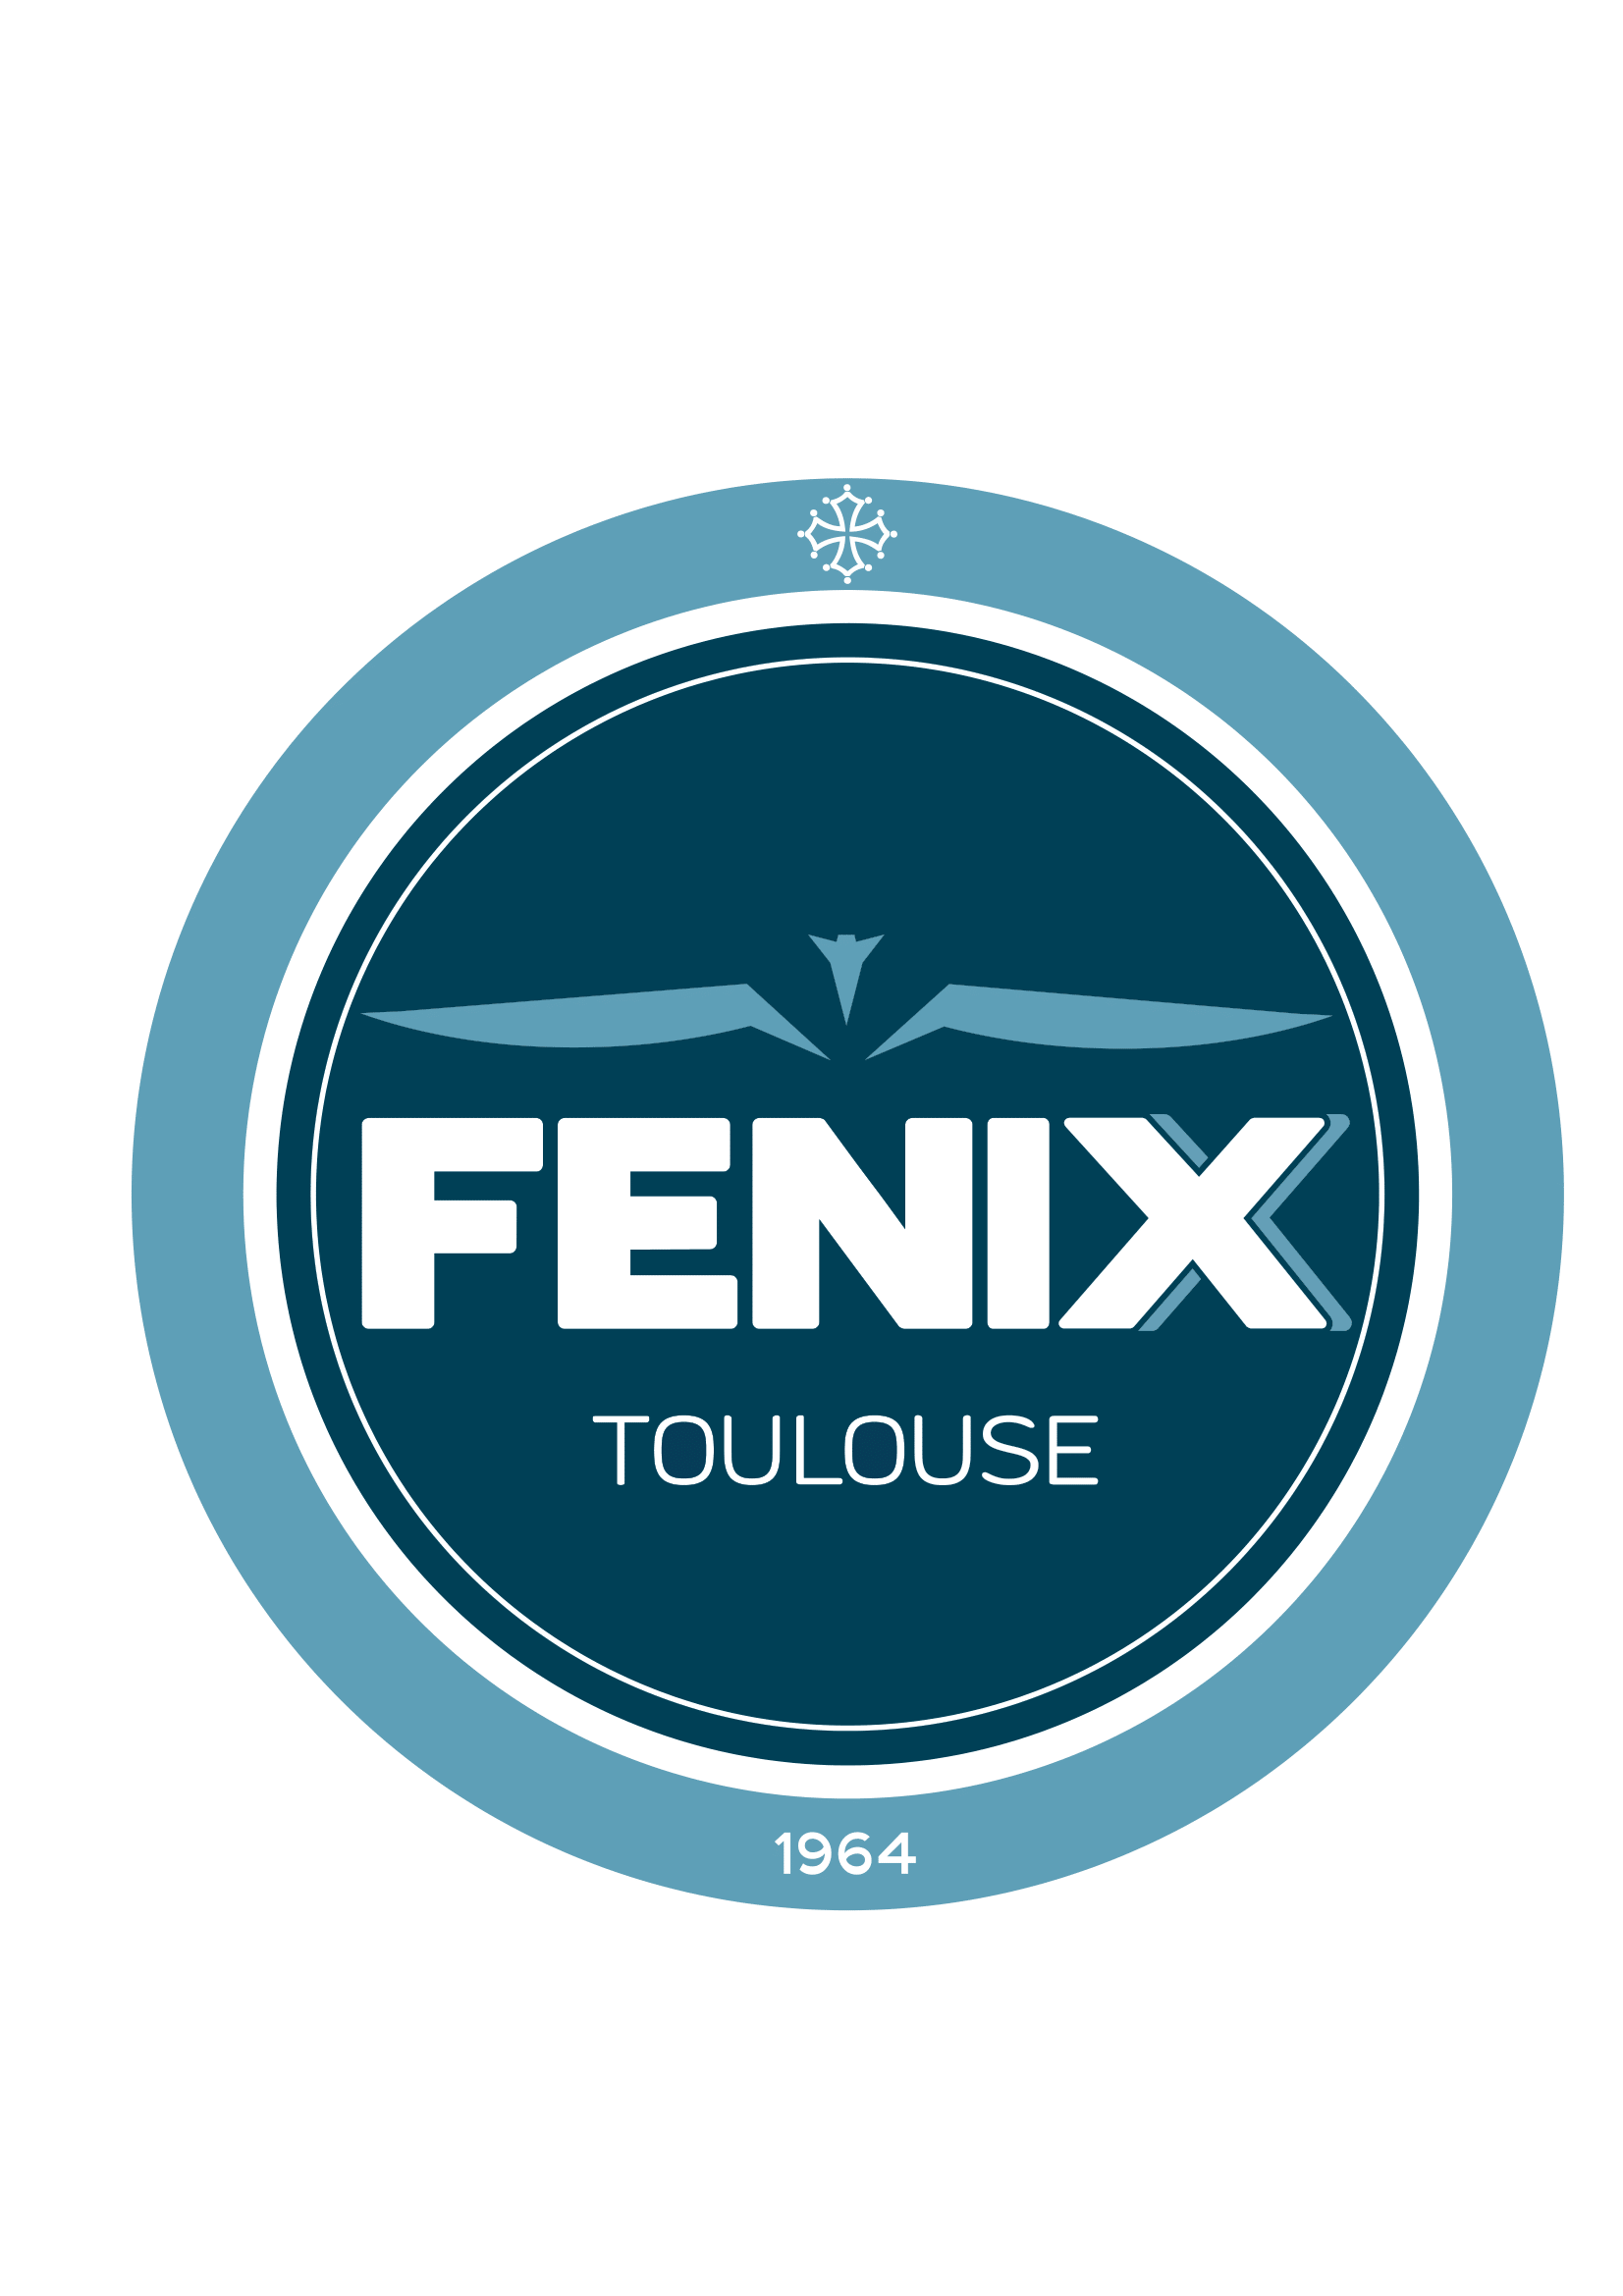 logo fenix 1